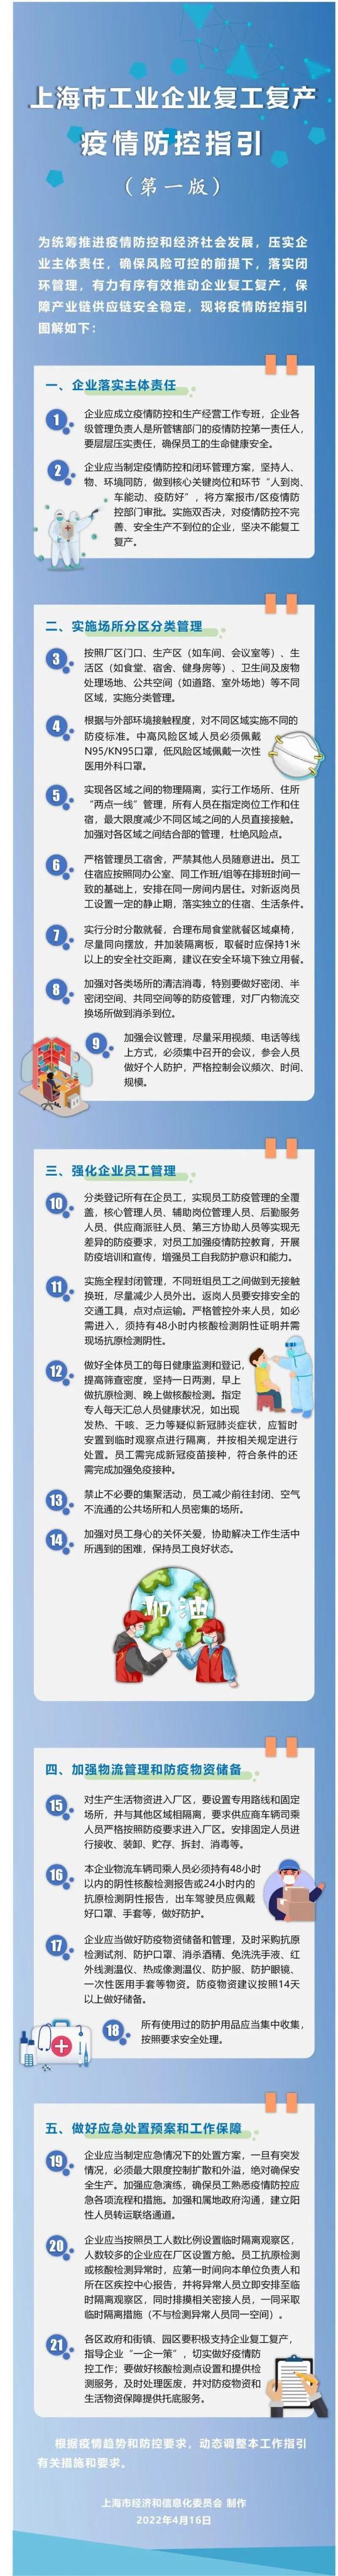 上海万人工厂有序复工复产 疫情防控指引发布